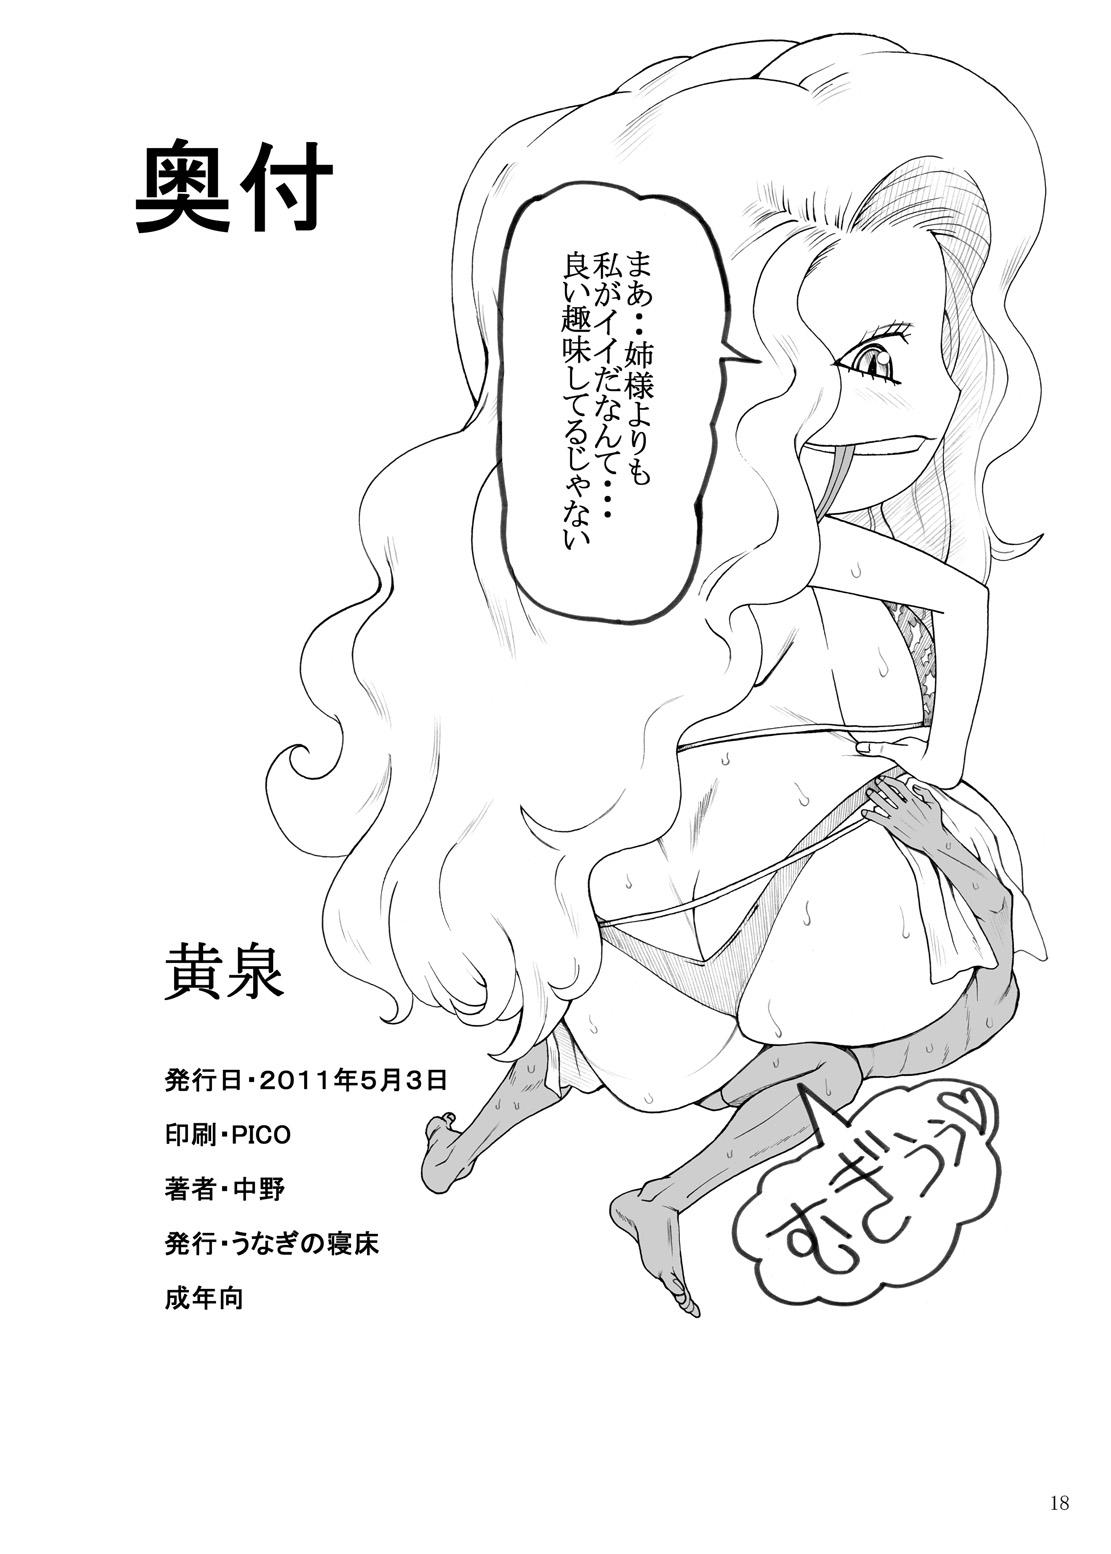 Grande Yomi - Toaru majutsu no index Thunder claps Nuru Massage - Page 17